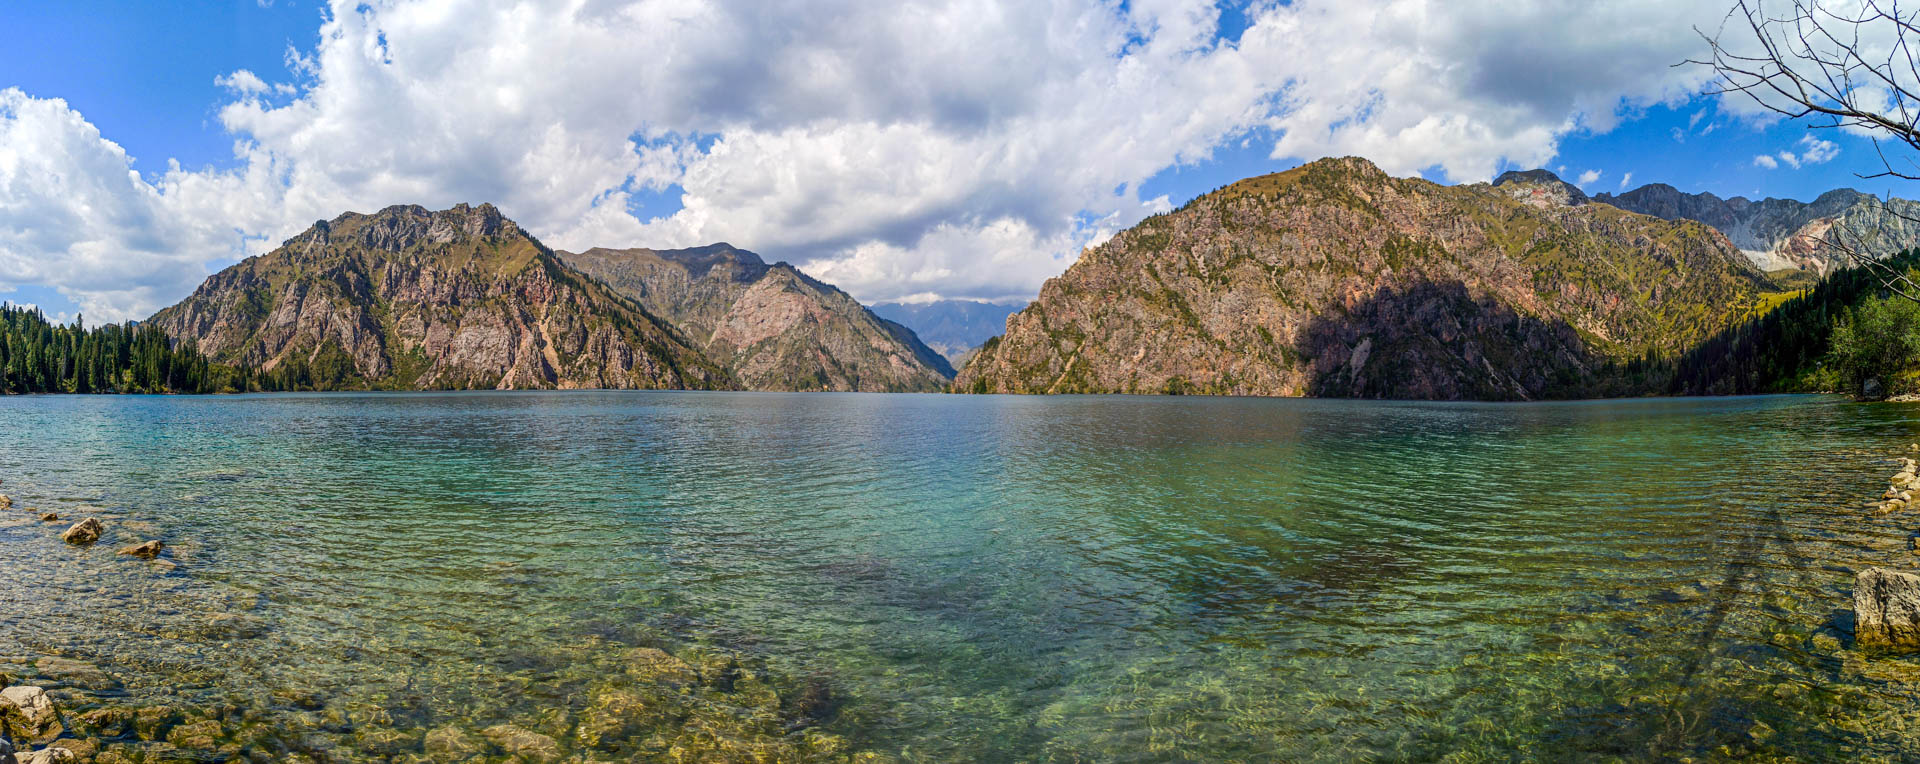 Amazing panorama view of Sary Chelek lake